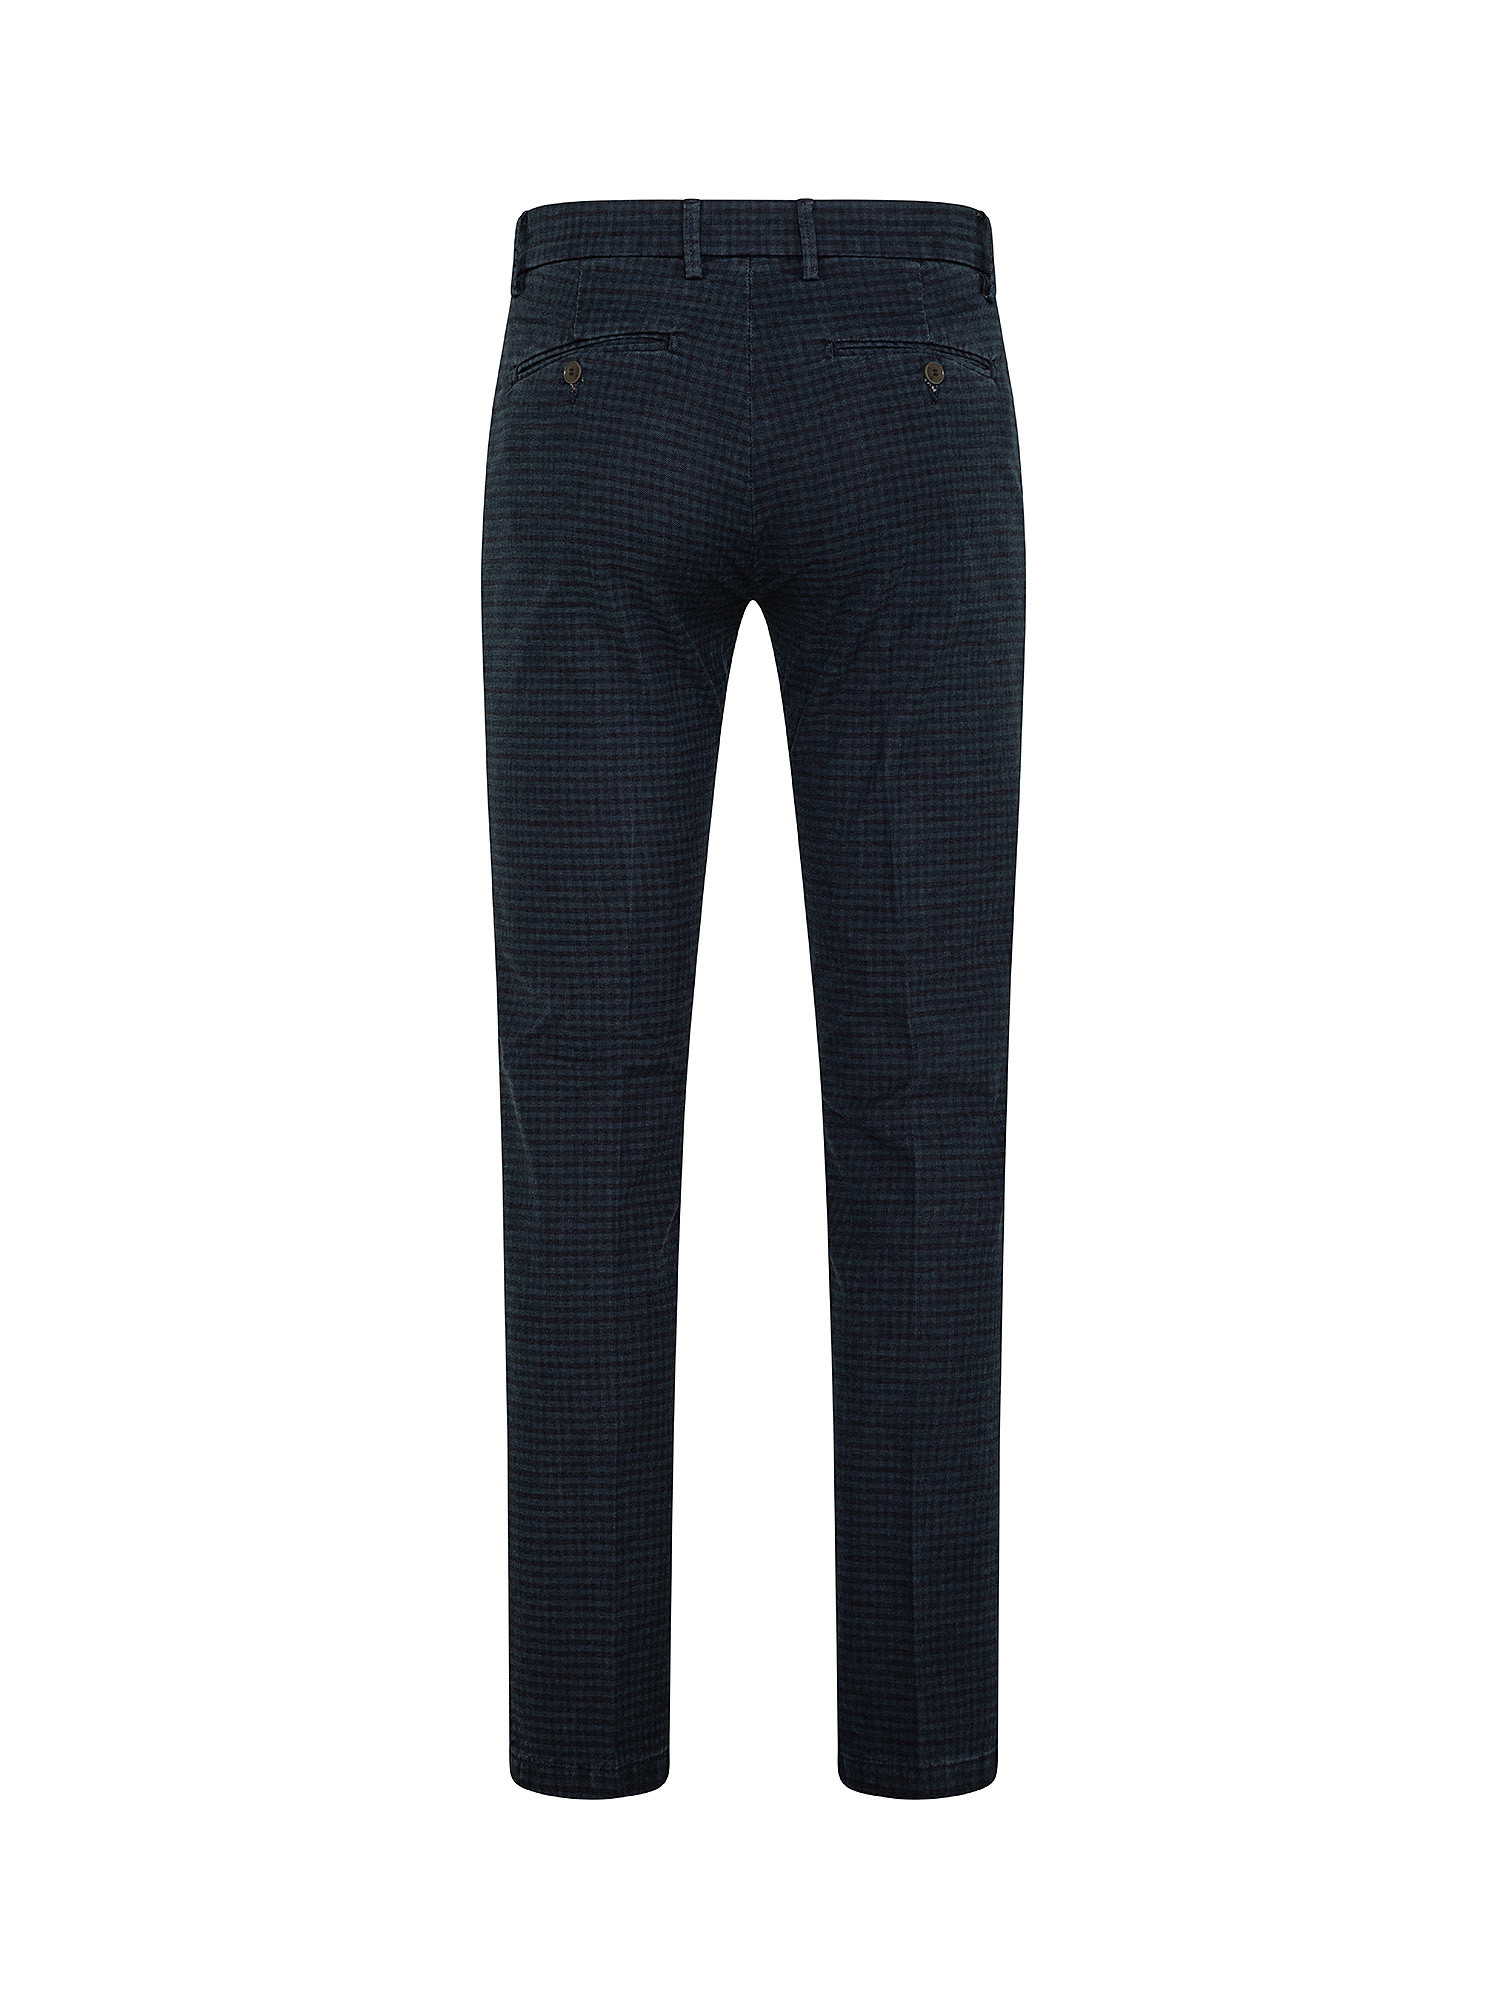 Pantaloni Chino, Blu, large image number 1